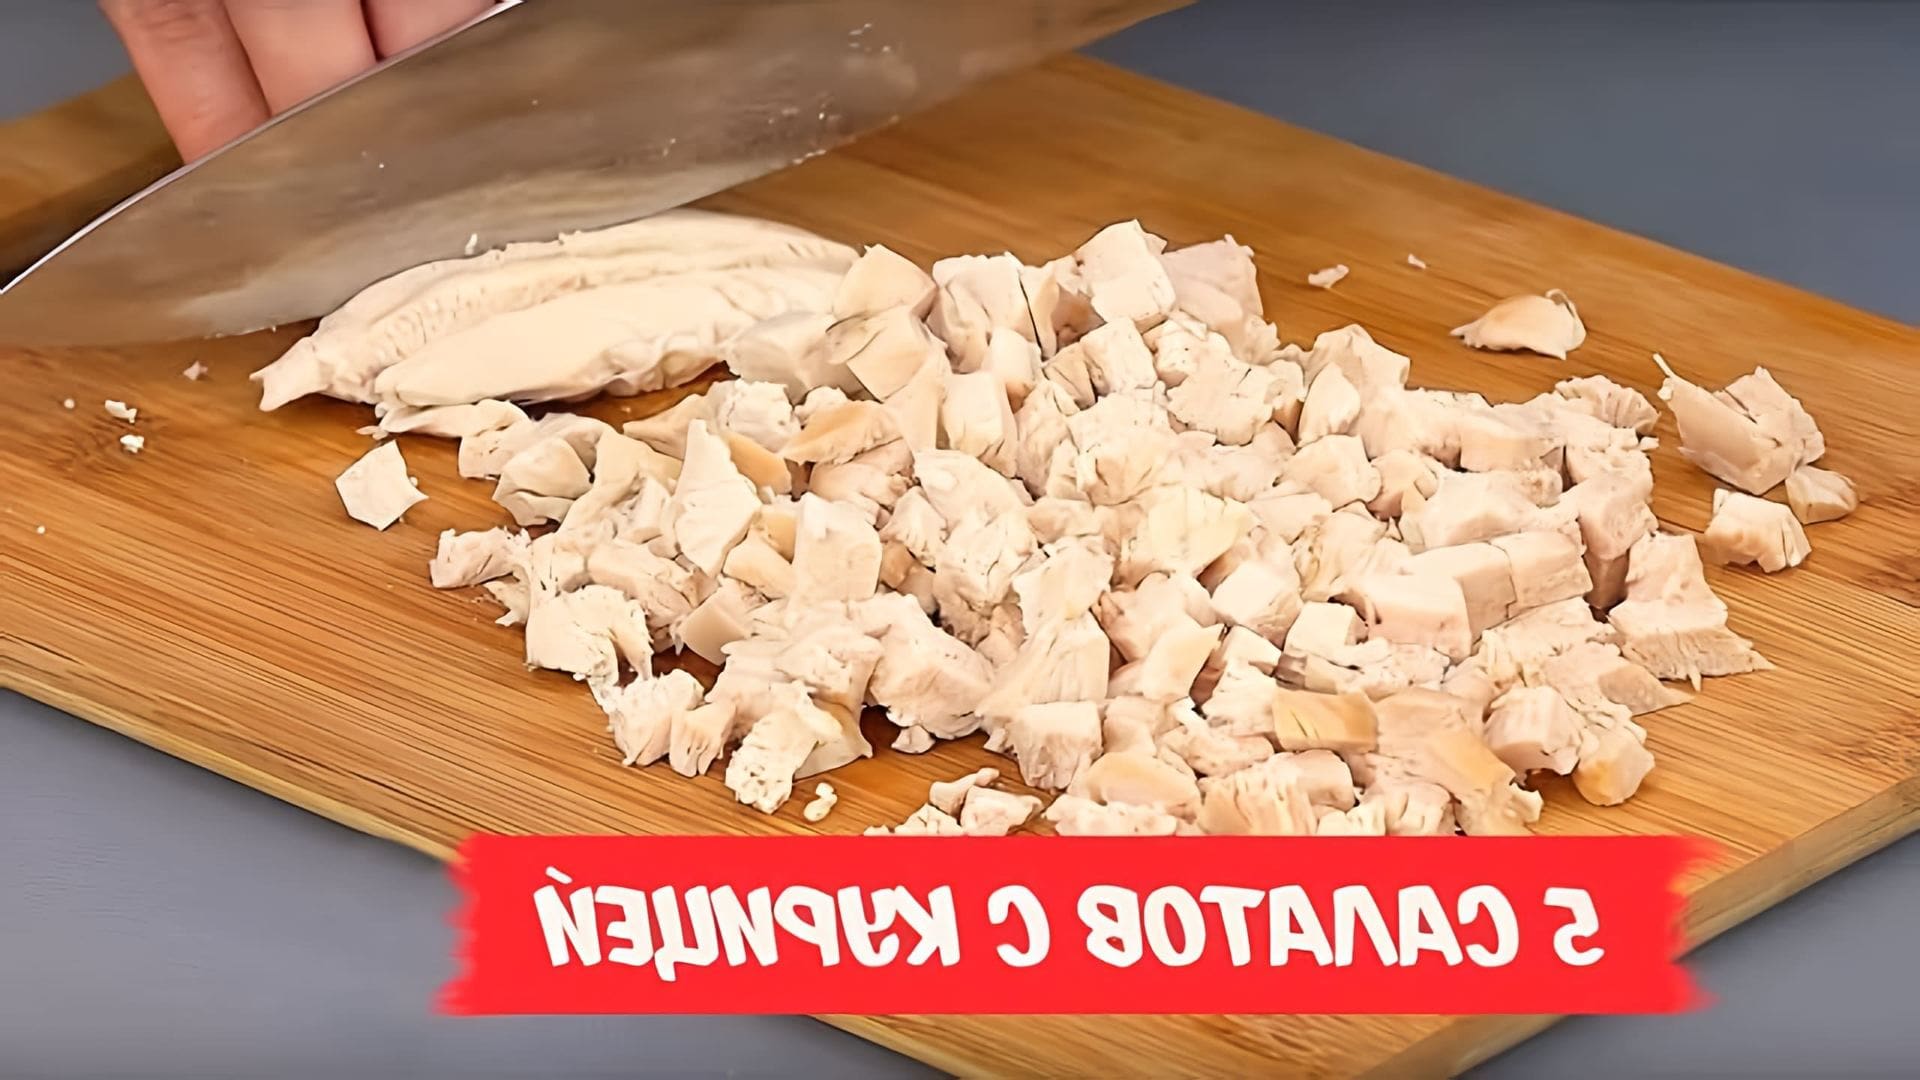 Видео рецепты для 5 салатов с курицей, которые часто подаются на праздничных случаях